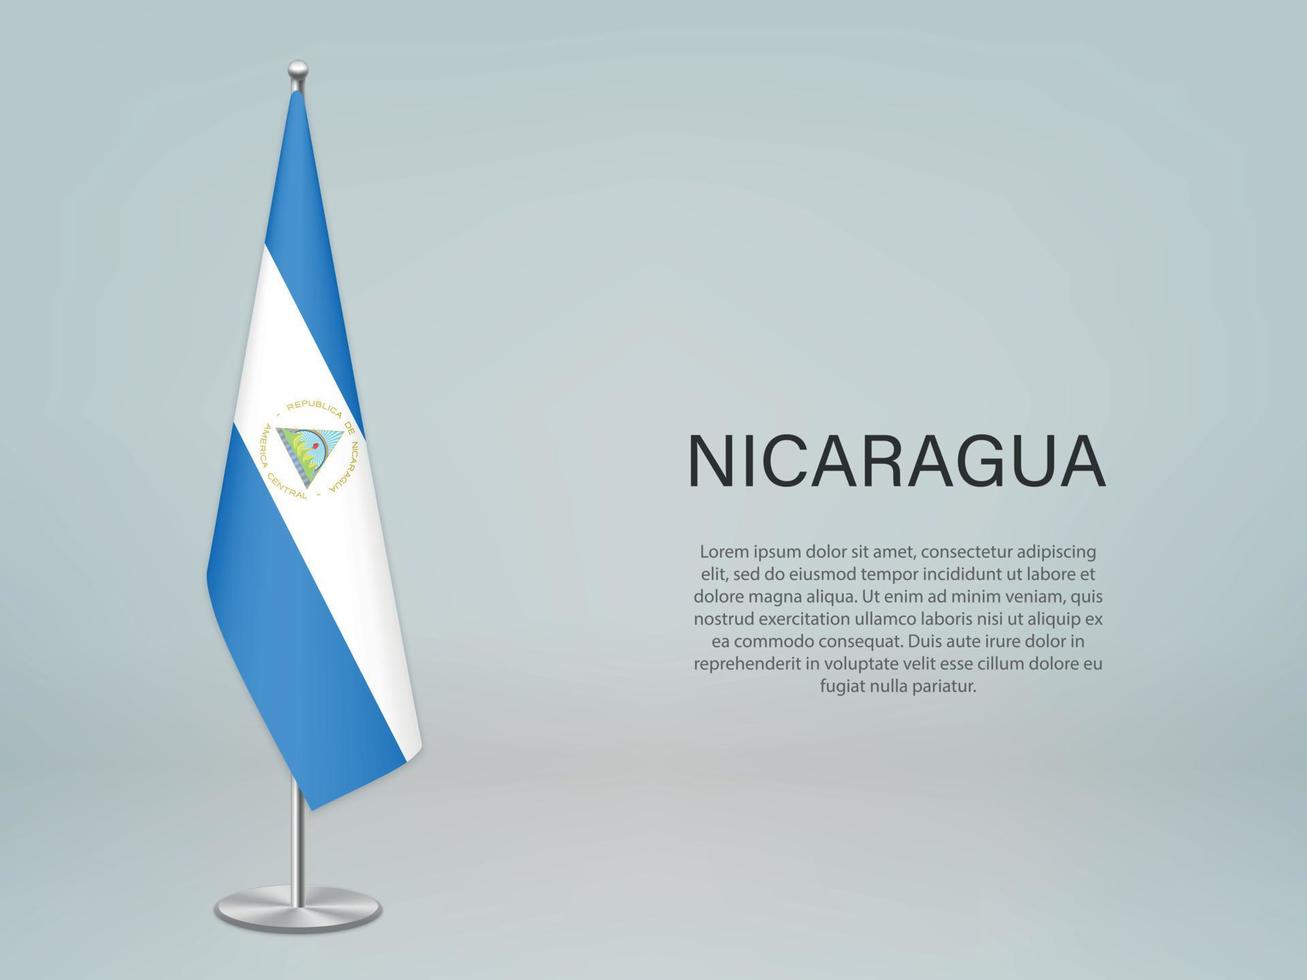 bandera colgante de nicaragua en el stand. plantilla para banner de conferencia vector